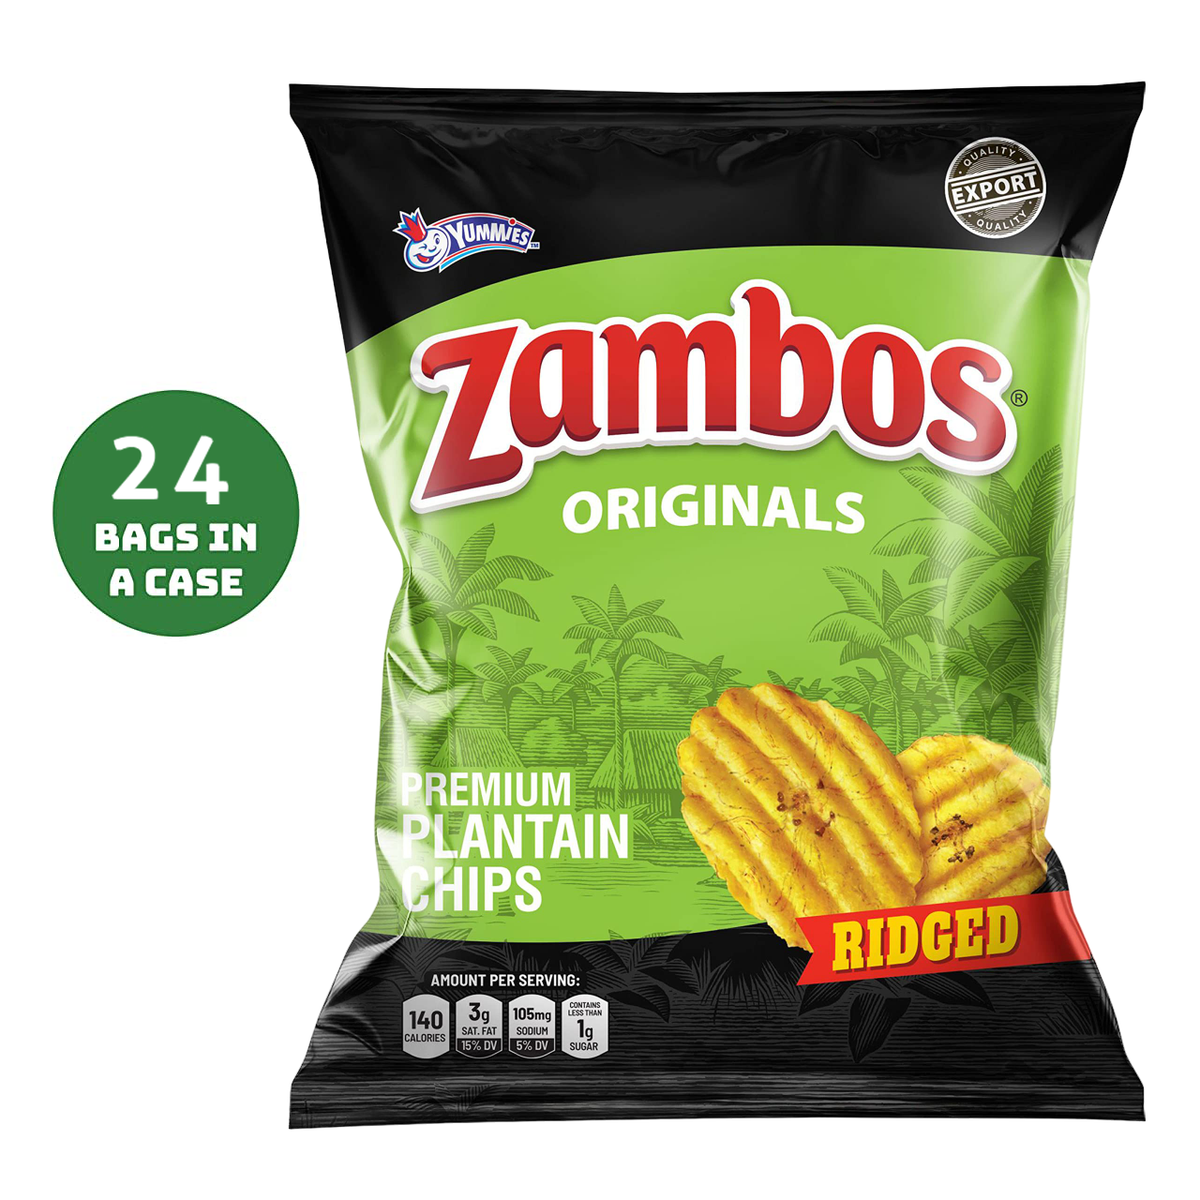 Zambos Ridged Originals Banana Chips Plantain Chips 24 Bags 5.29oz